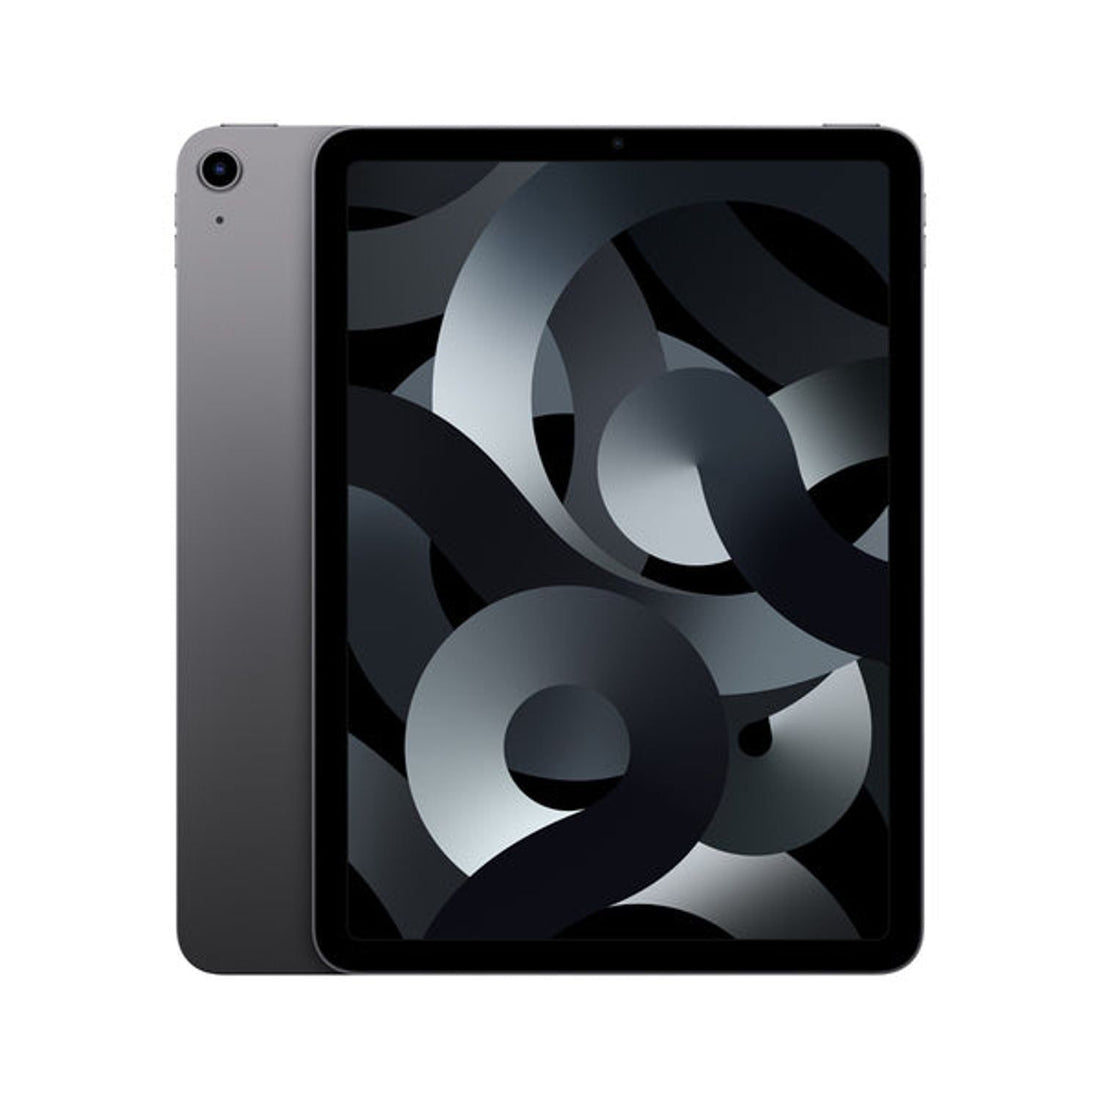 oferta-iPad Pro 12.9 Reacondicionado 1.a generación 128 GB- WiFi - Gris  grado a